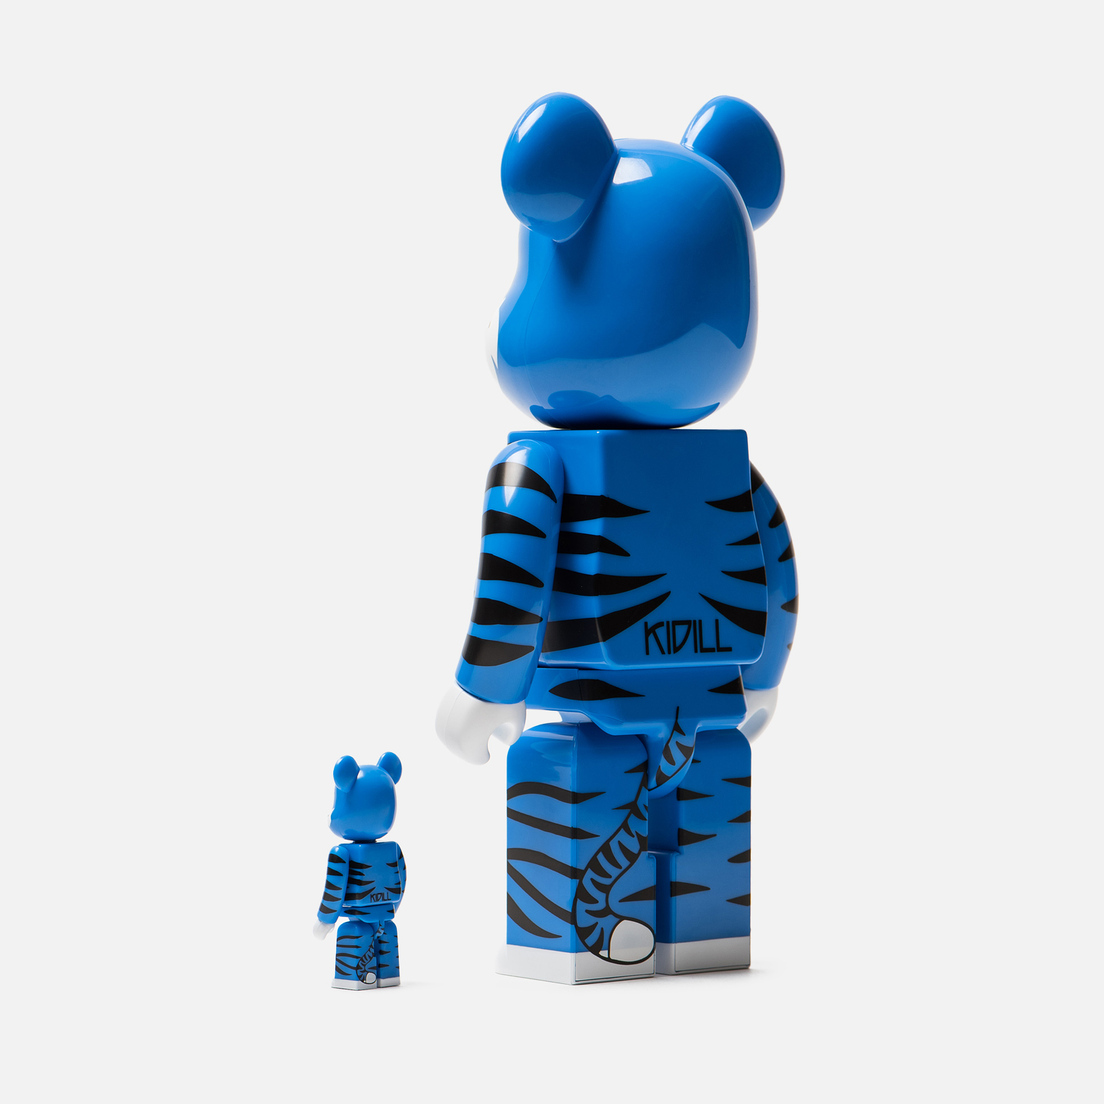 Medicom Toy Игрушка Bearbrick Kidill Bear 100% & 400%